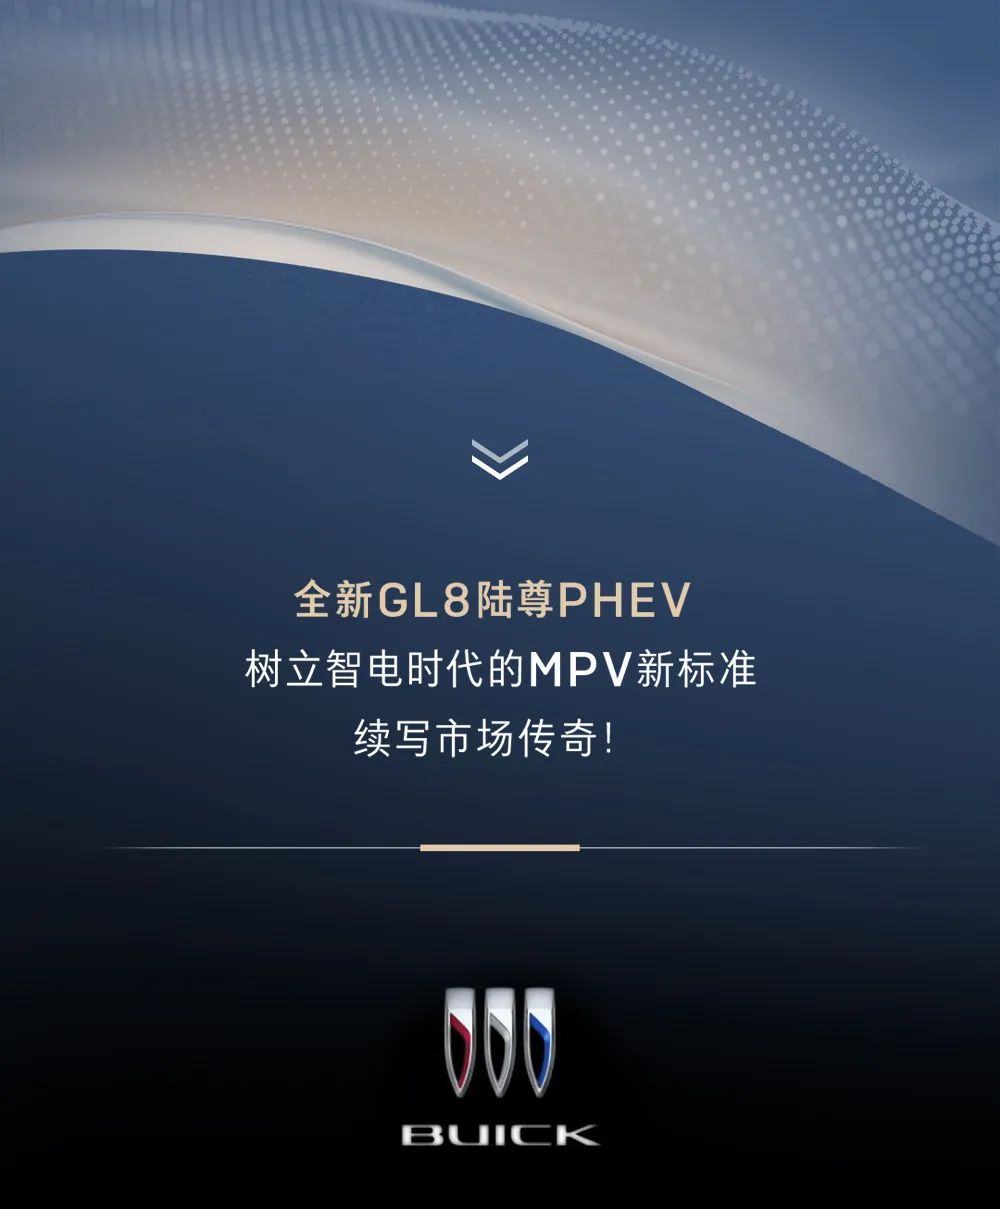 全新GL8陆尊PHEV将于4月24日重磅发布！来济南银座别克抢先体验吧